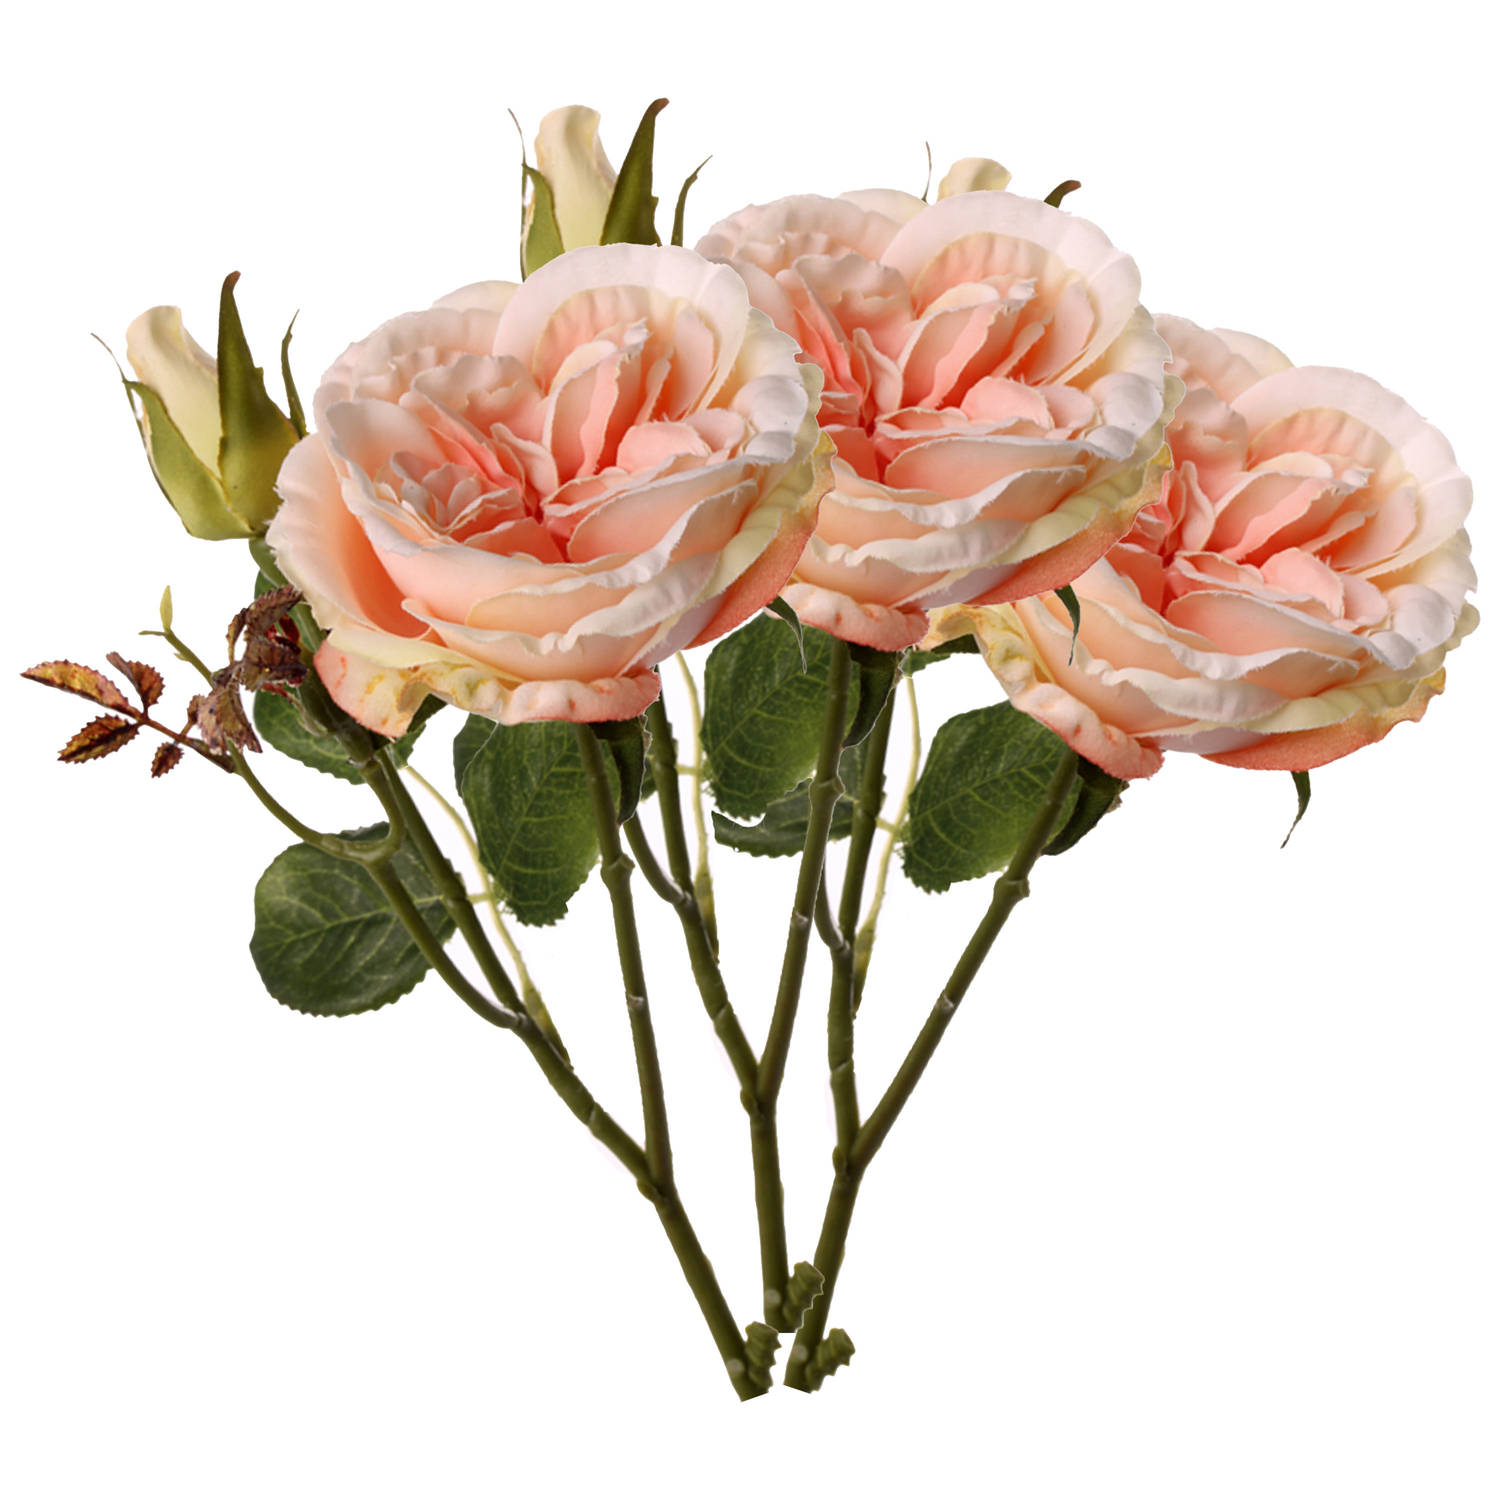 Top Art Kunstbloem roos Little Joy - 3x - roze - 38 cm - kunststof steel - decoratie bloemen - Kunstbloemen